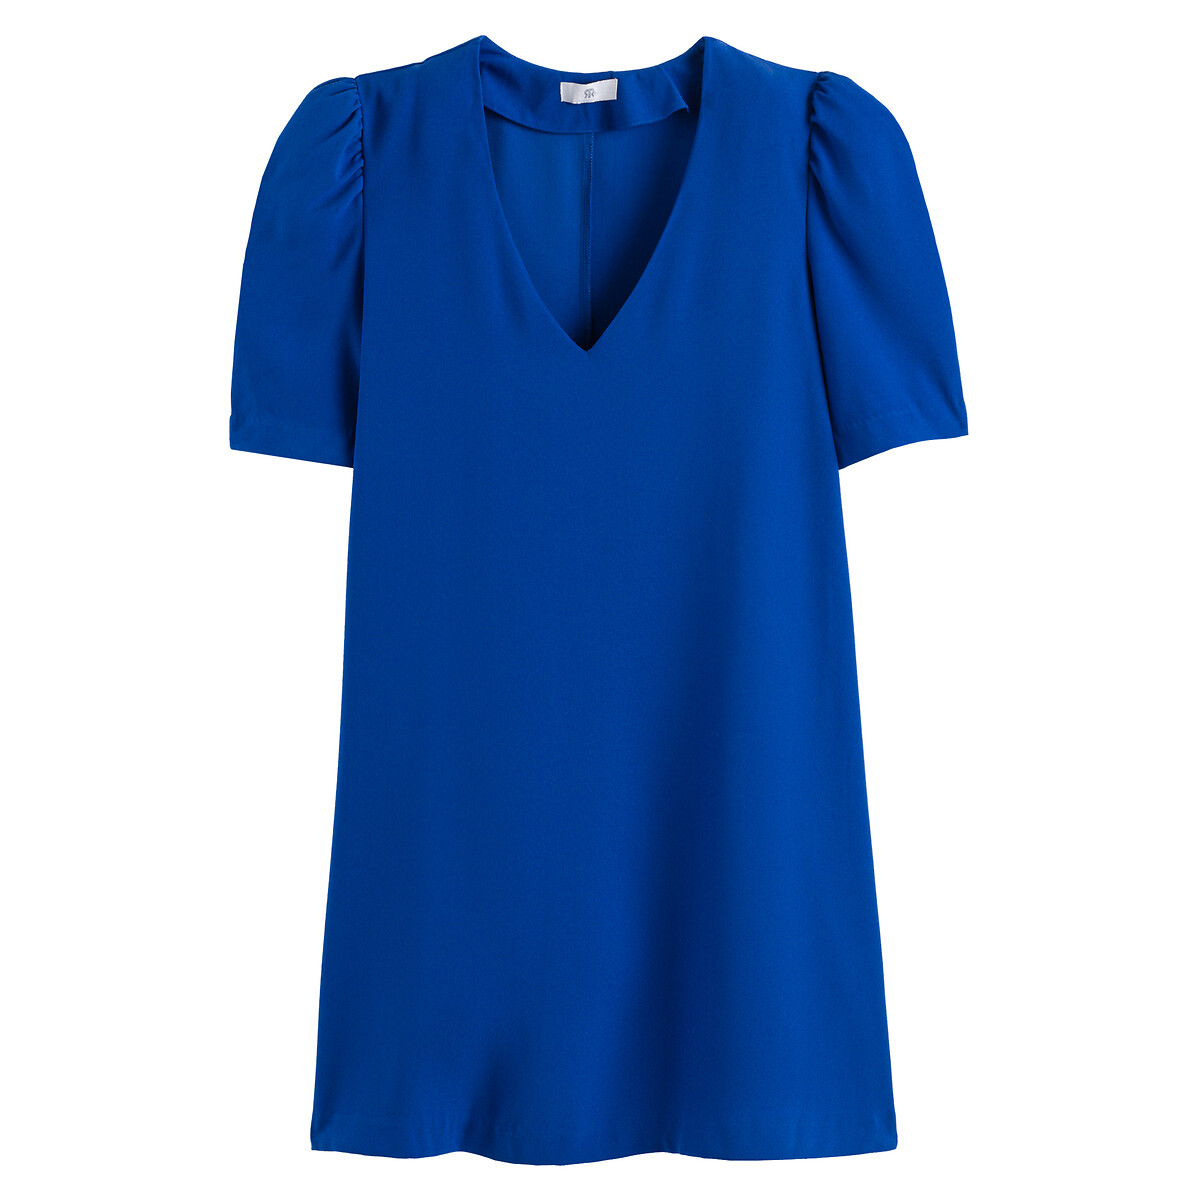 Платье Короткое с V-образным вырезом короткие рукава 44 синий LaRedoute, размер 44 - фото 5